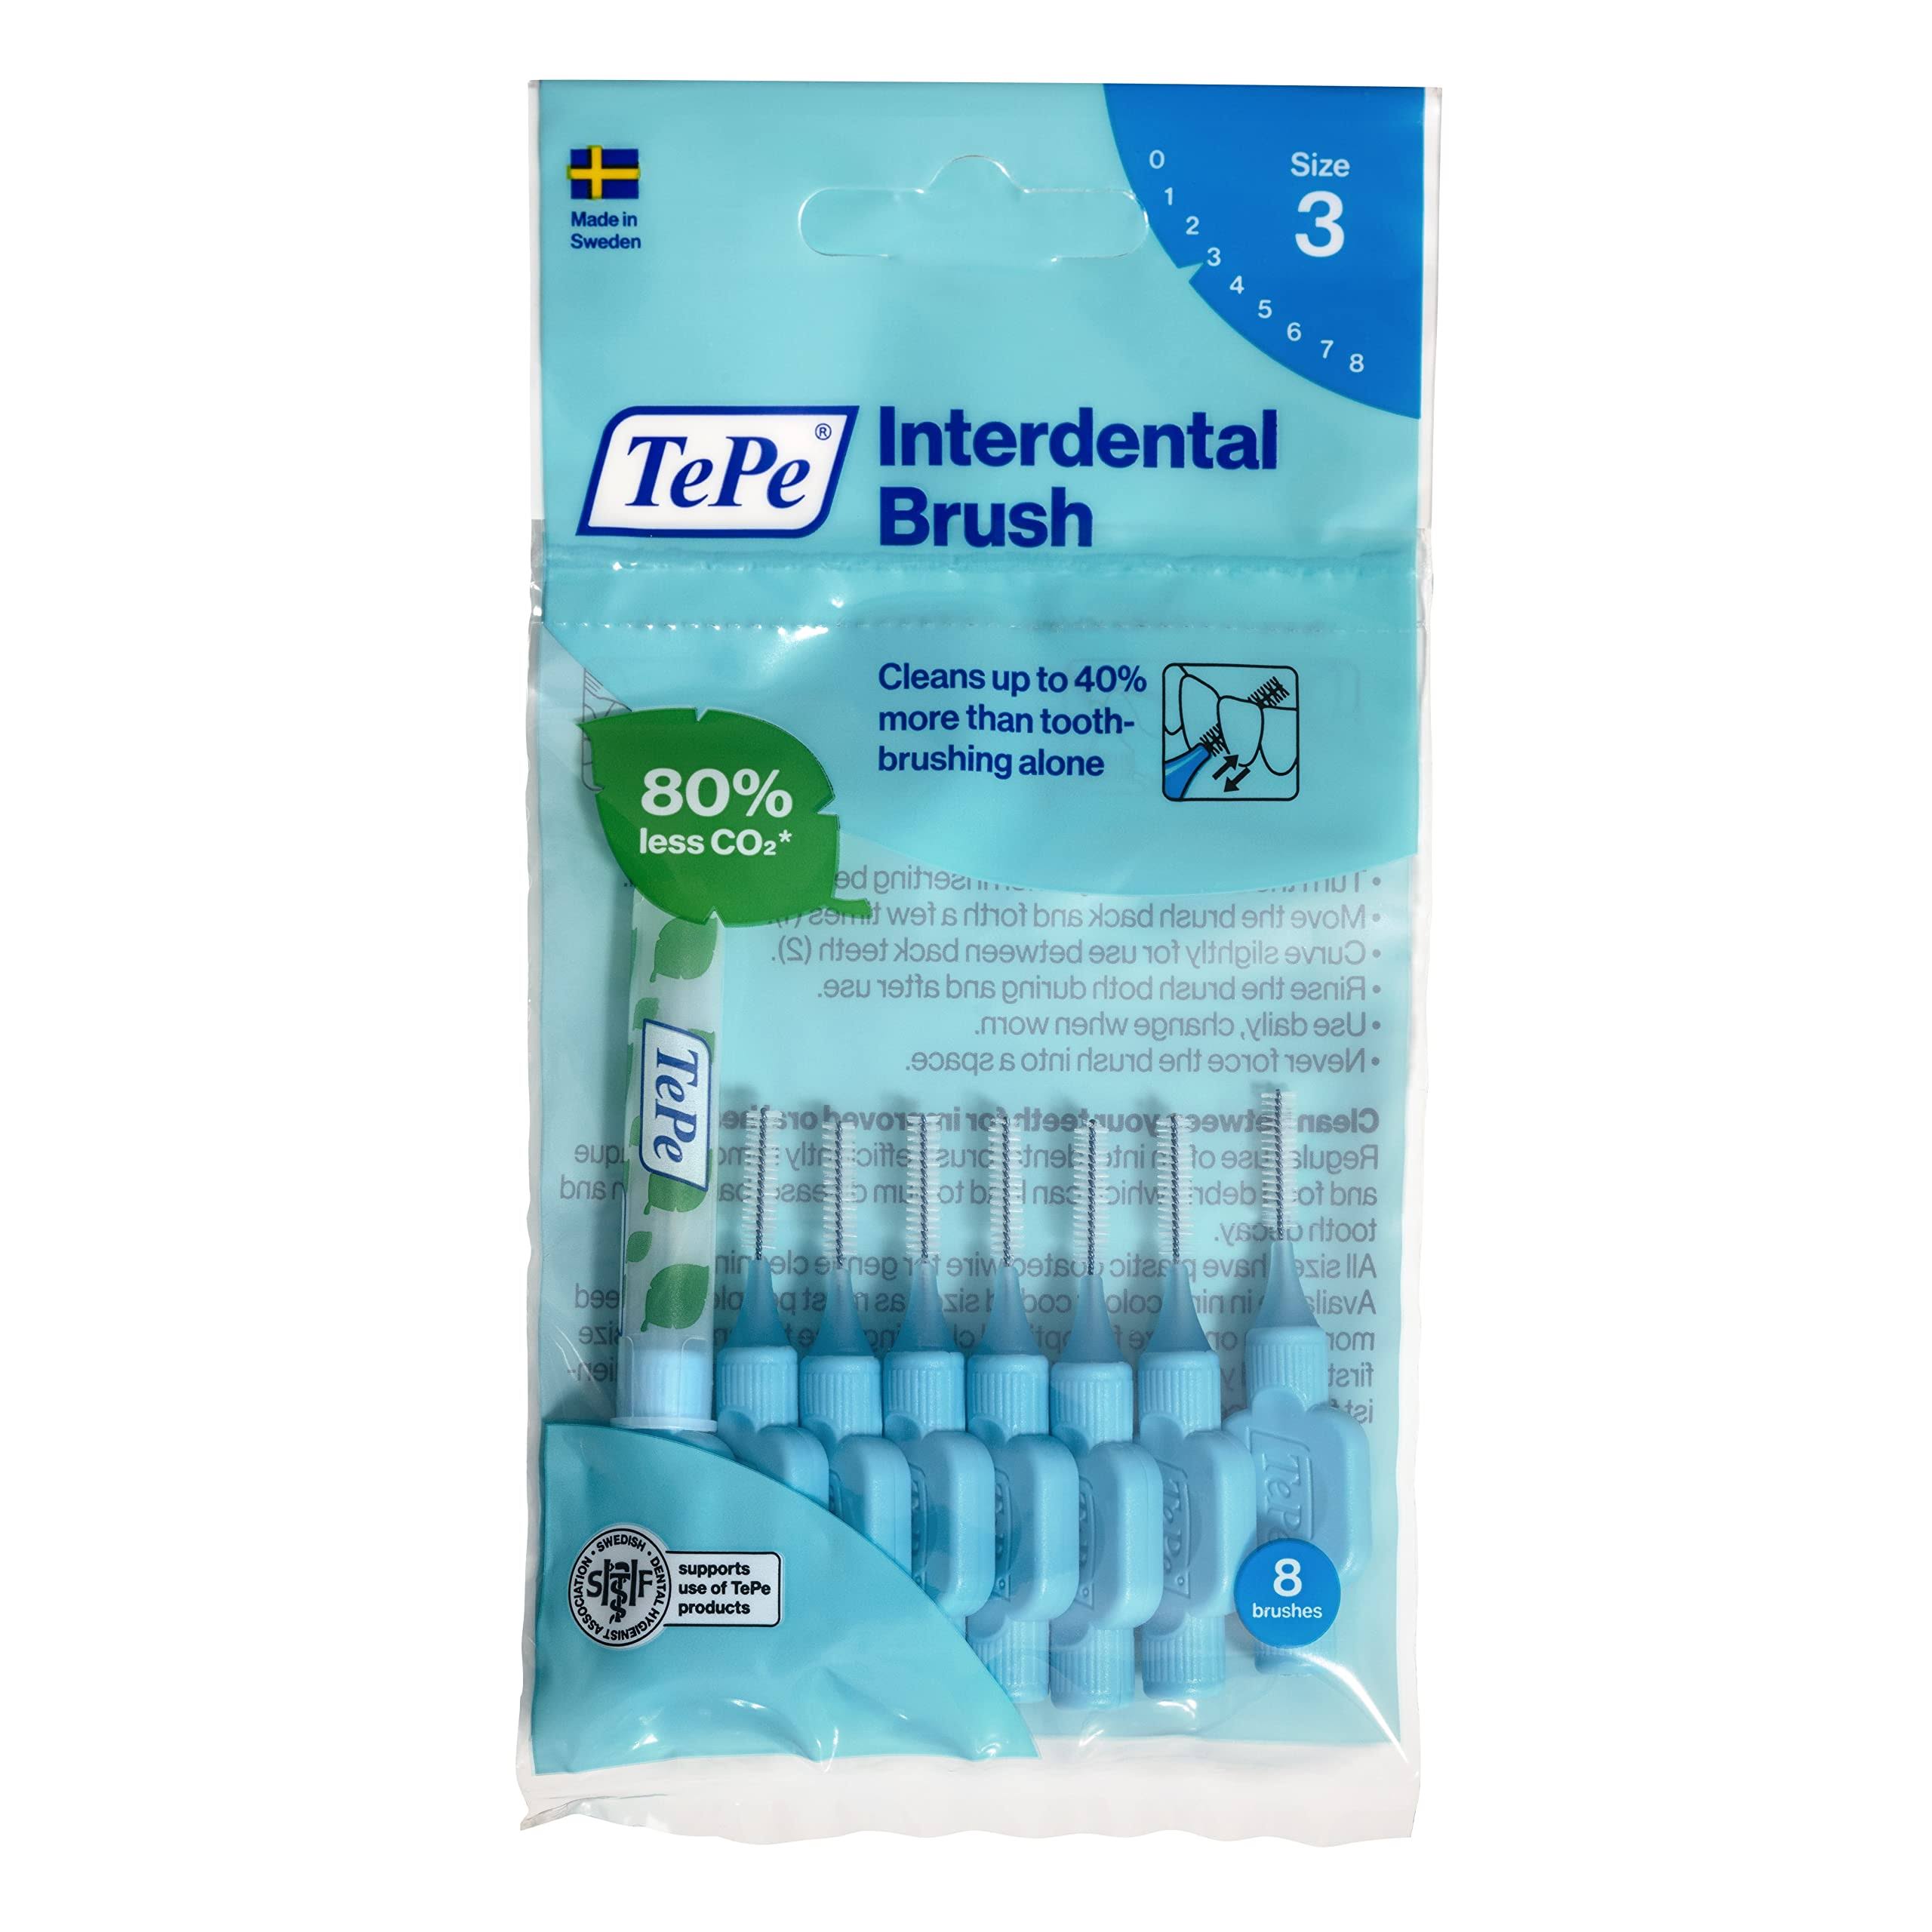 TePe Interdental Brush - Blue (0.6mm) Size 3 - 8 Pack